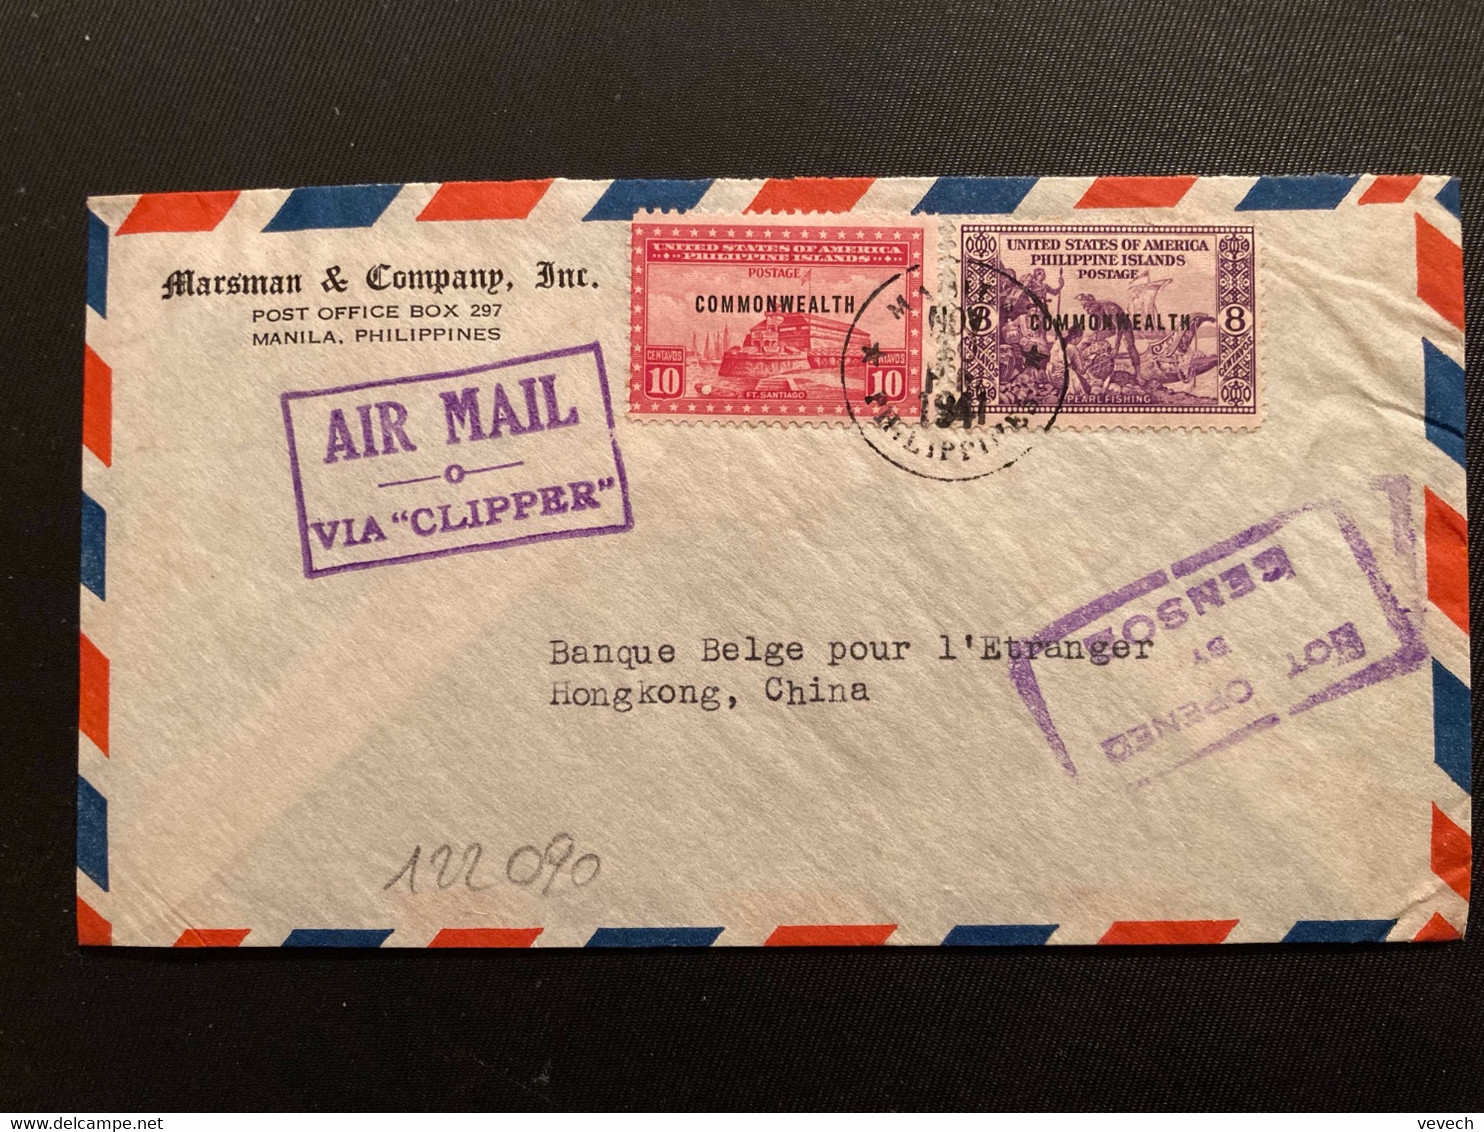 LETTRE Par Avion VIA "CLIPPER" Pour HONG KONG CHINE TP 10c + 8c Surchargé. COMMONWEALTH OBL.NOV 10 1941 MANILA + NOT OPE - Filippine